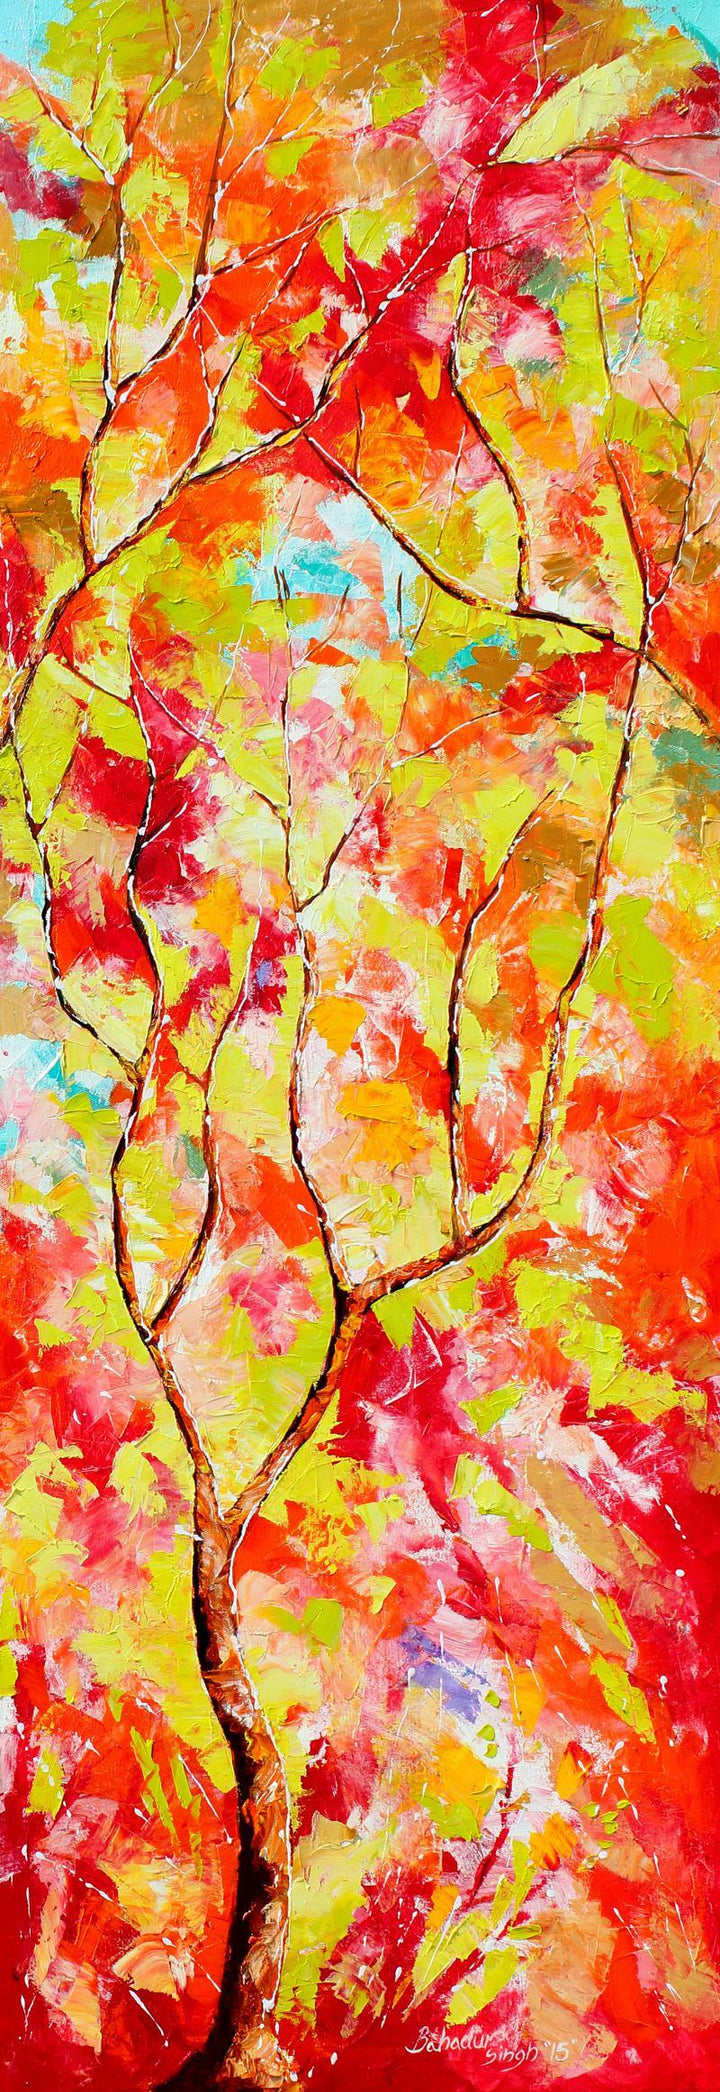 Seasons Xii Painting by Bahadur Singh | ArtZolo.com